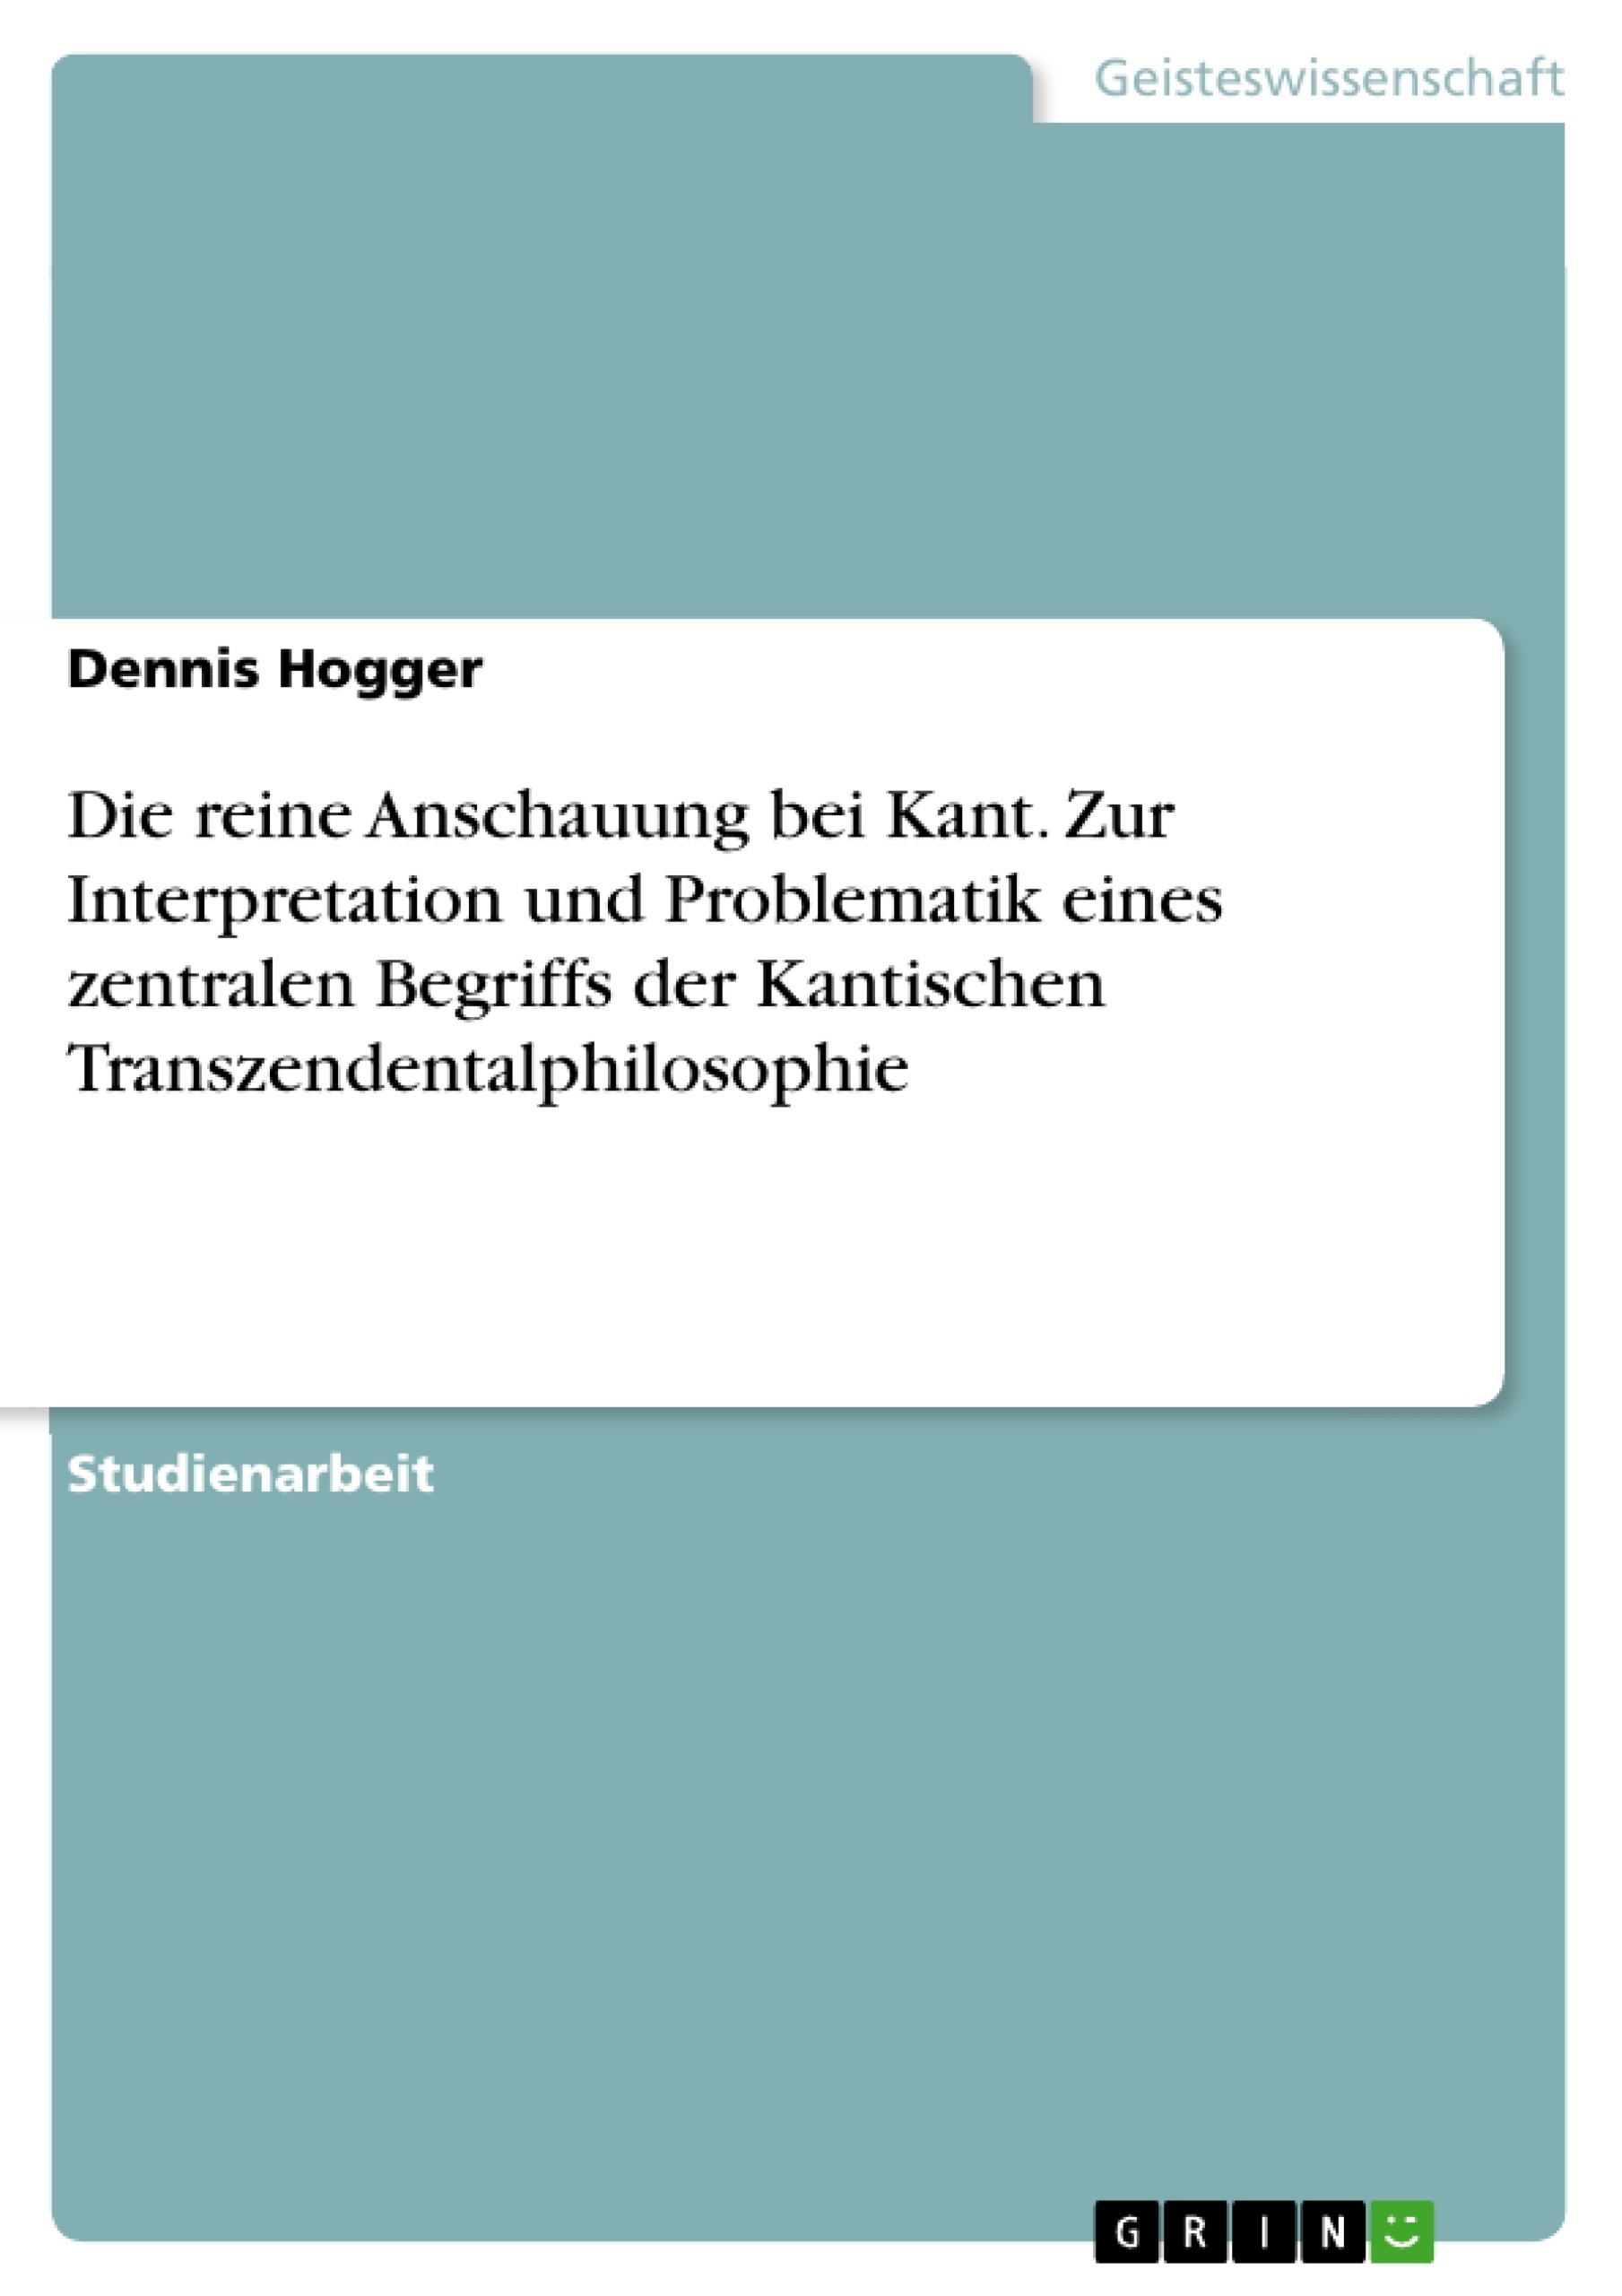 Title: Die reine Anschauung bei Kant. Zur Interpretation und Problematik eines zentralen Begriffs der Kantischen Transzendentalphilosophie